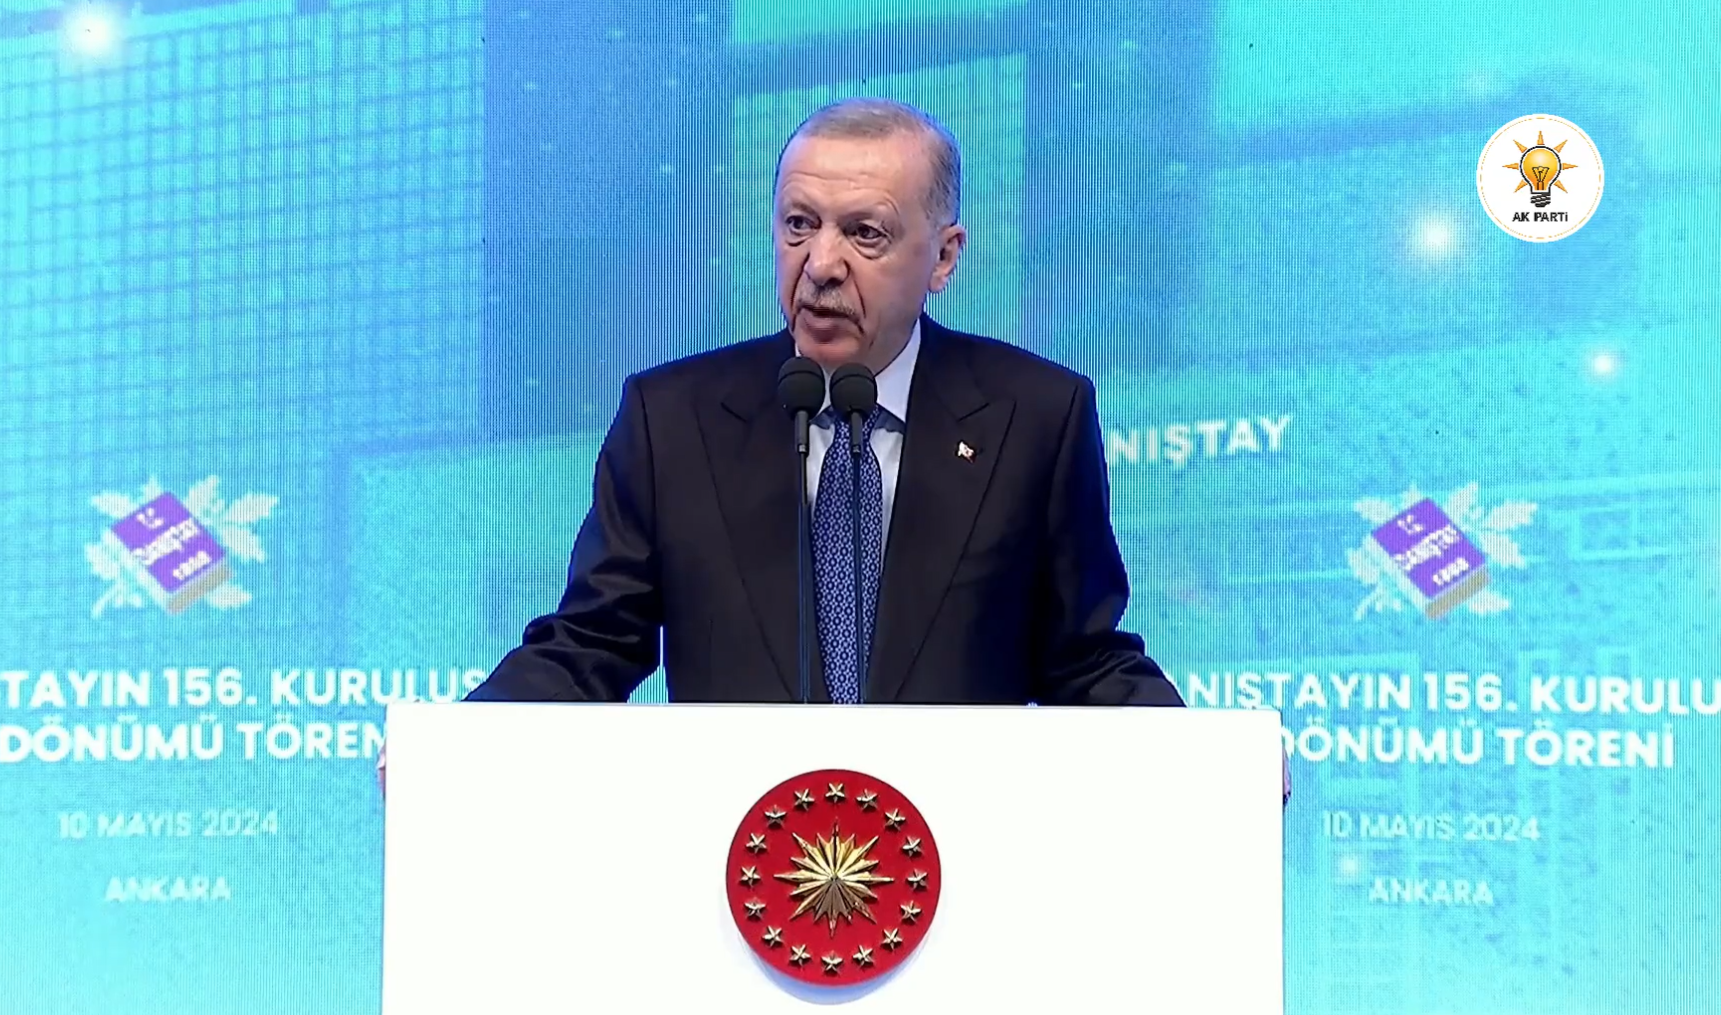 Erdoğan, Danıştay’ın 156. Kuruluş Yıldönümü Töreni'nde konuşuyor